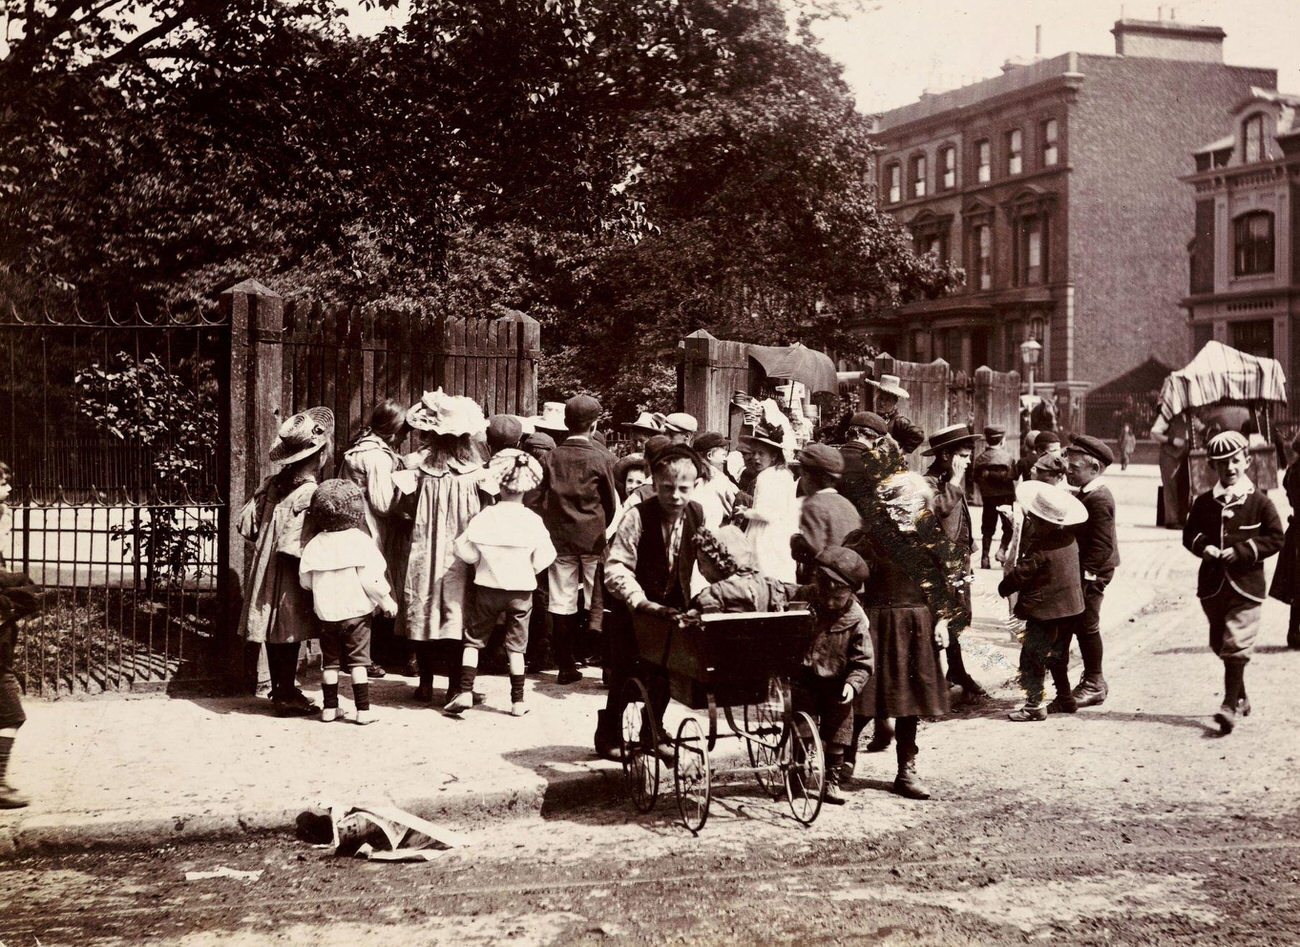 Children gathering near a park entrance, circa 1900.